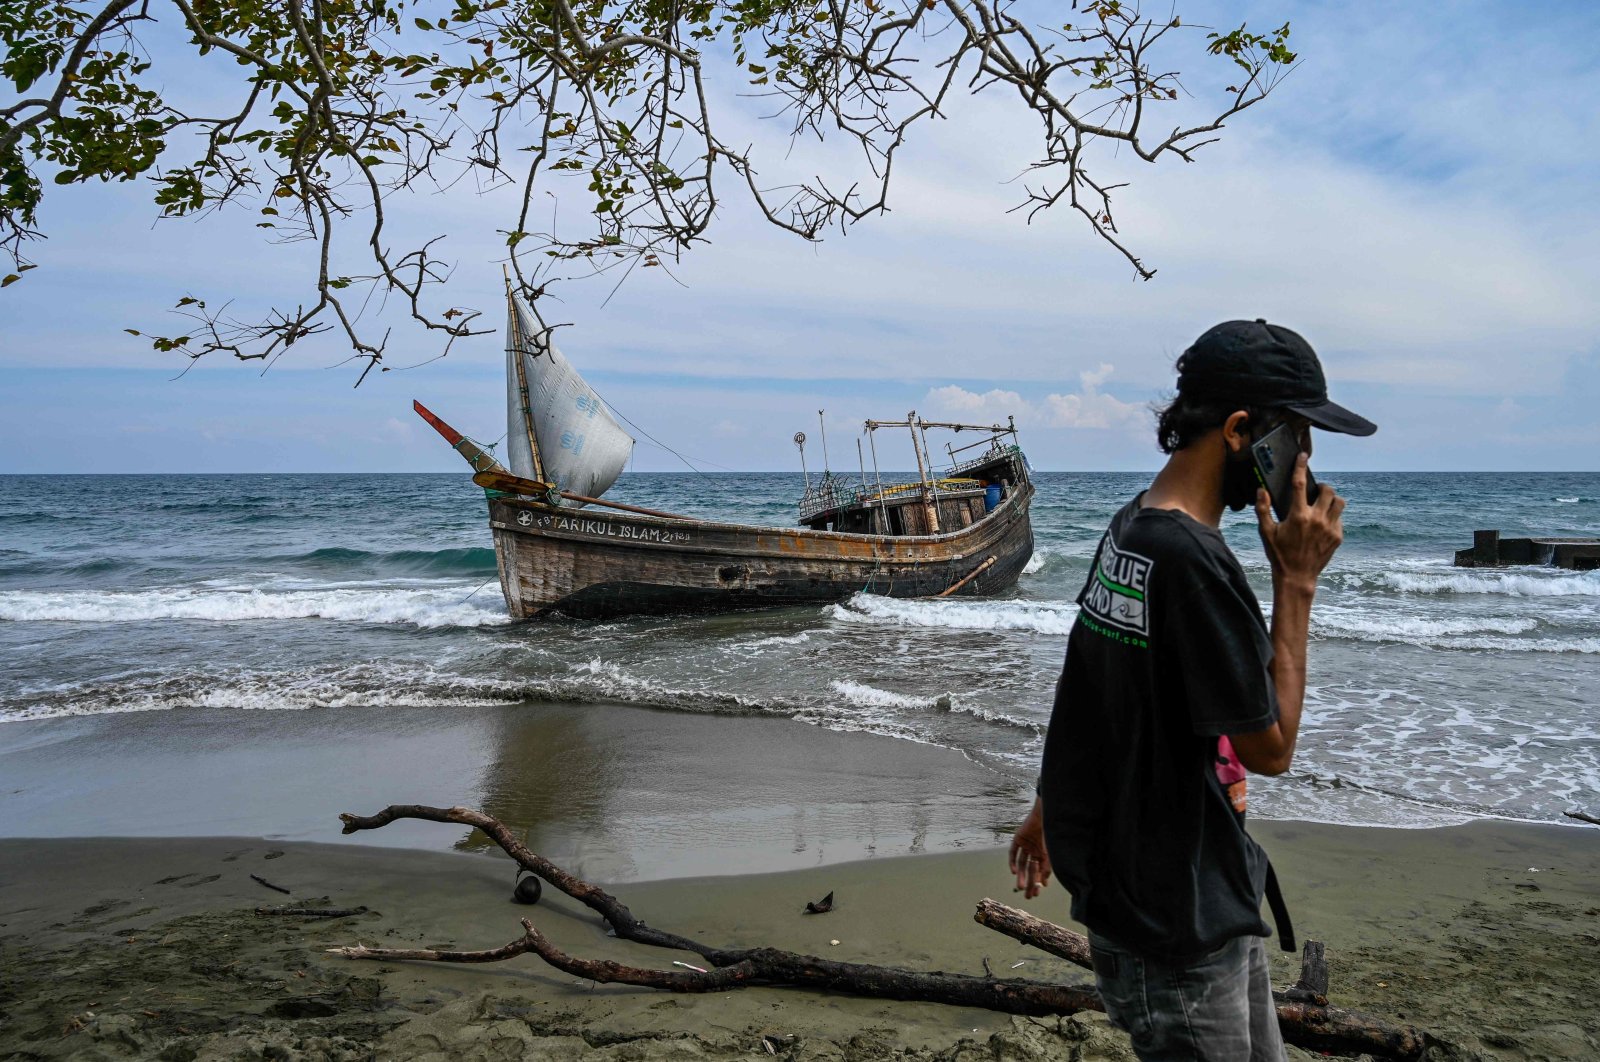 Tahun 2022 paling mematikan di laut bagi Rohingya karena 180 orang diduga tenggelam